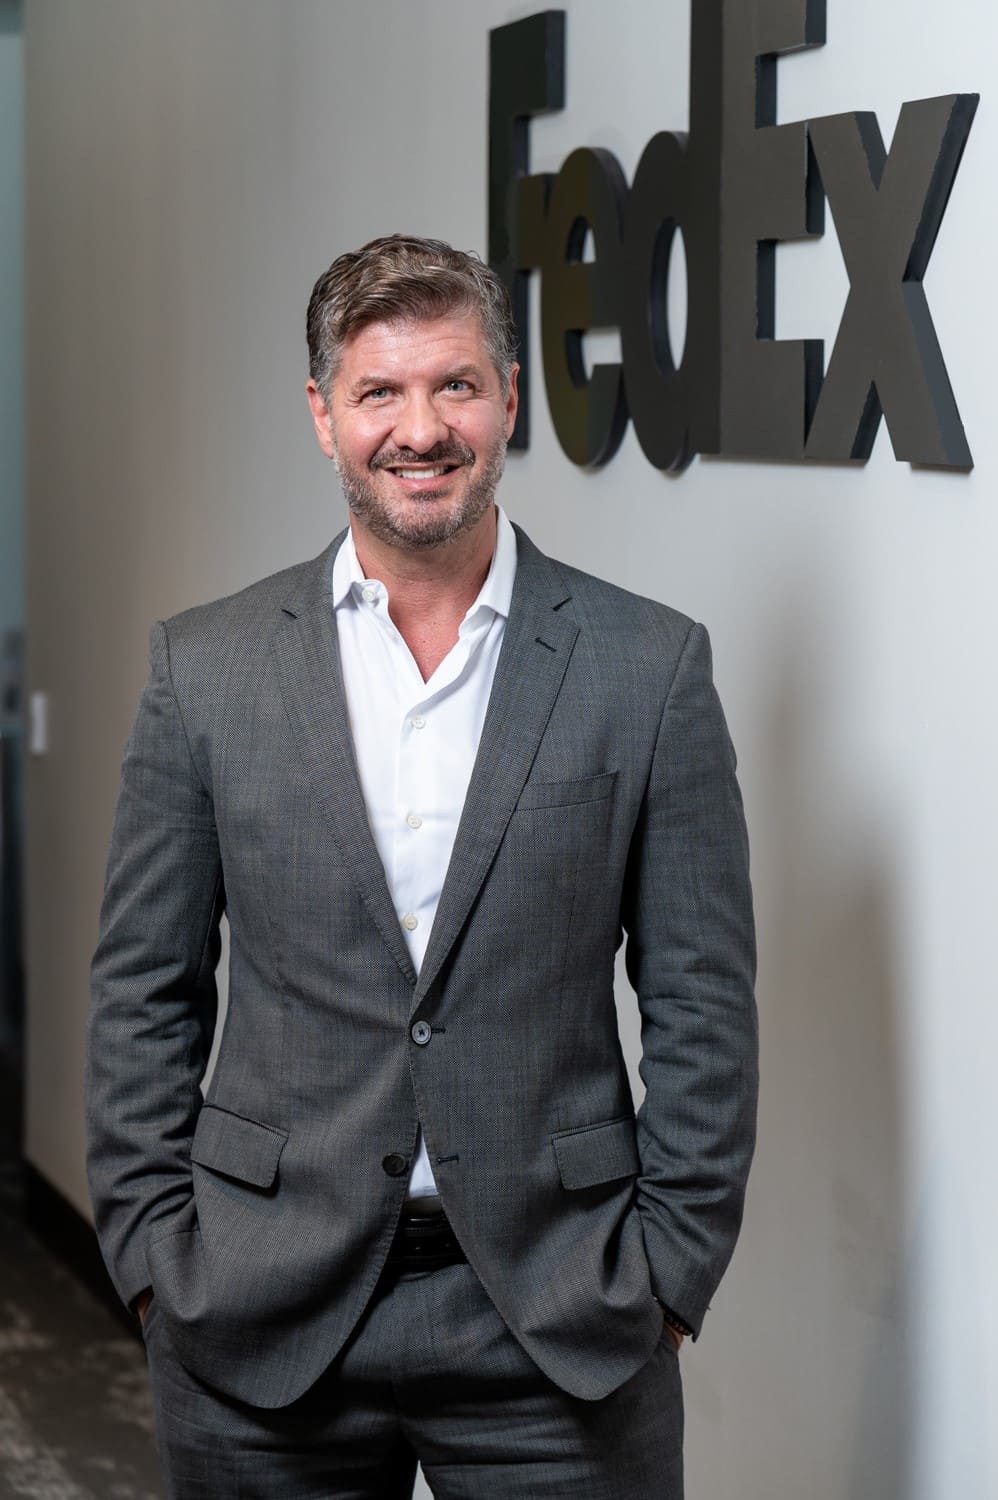  FedEx Express anuncia novo Vice-Presidente de Operações no Brasil